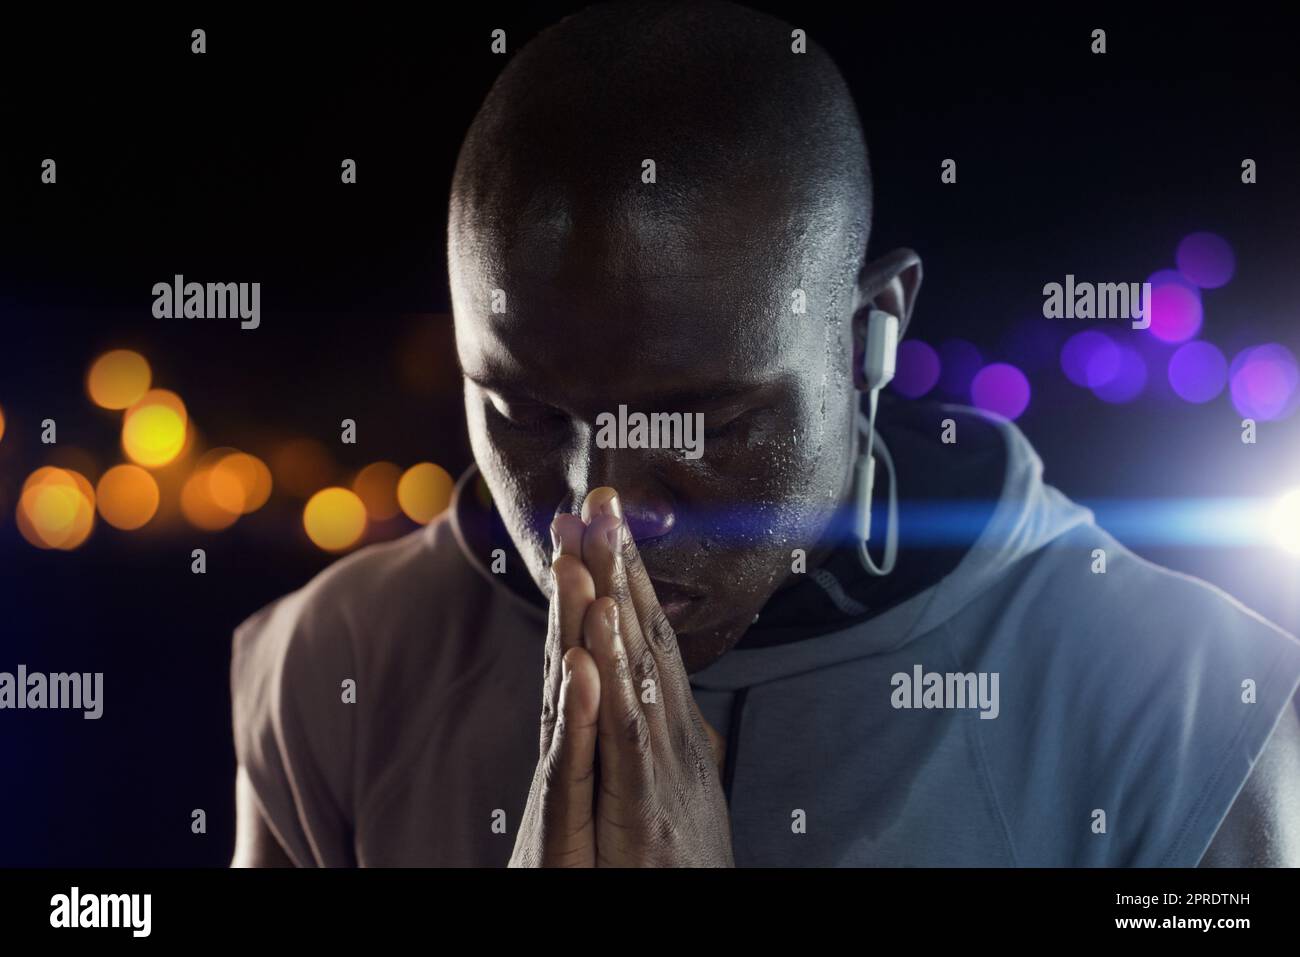 Le preghiere silenziose vanno molto lontano. Studio shot di un giovane sportivo che tiene le mani insieme in preghiera su uno sfondo scuro. Foto Stock